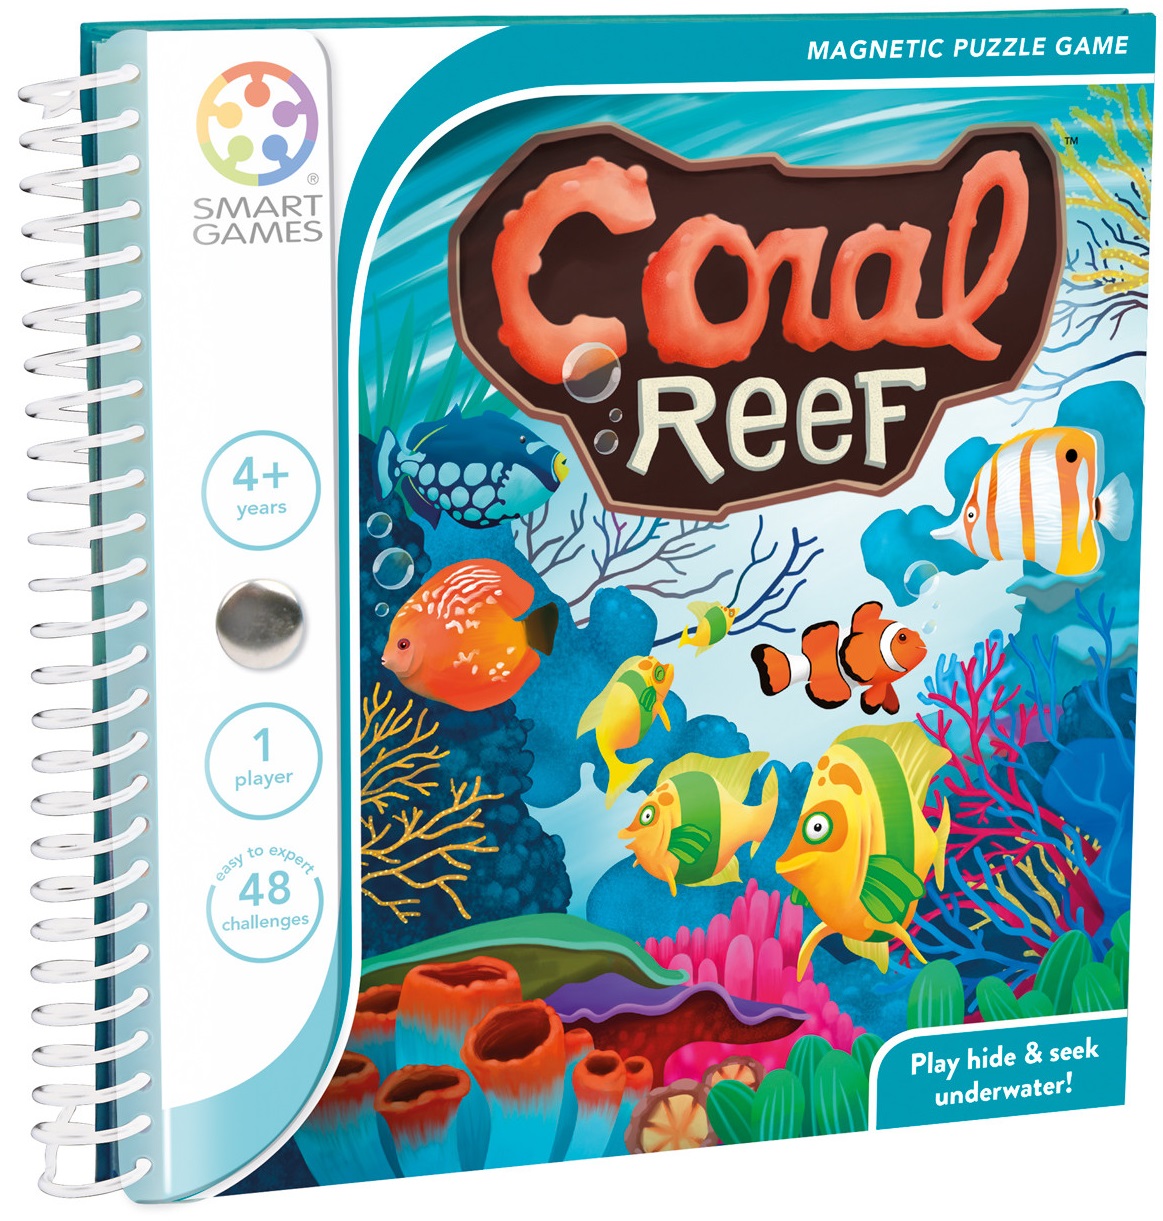 Coral Reef. Recif de corali